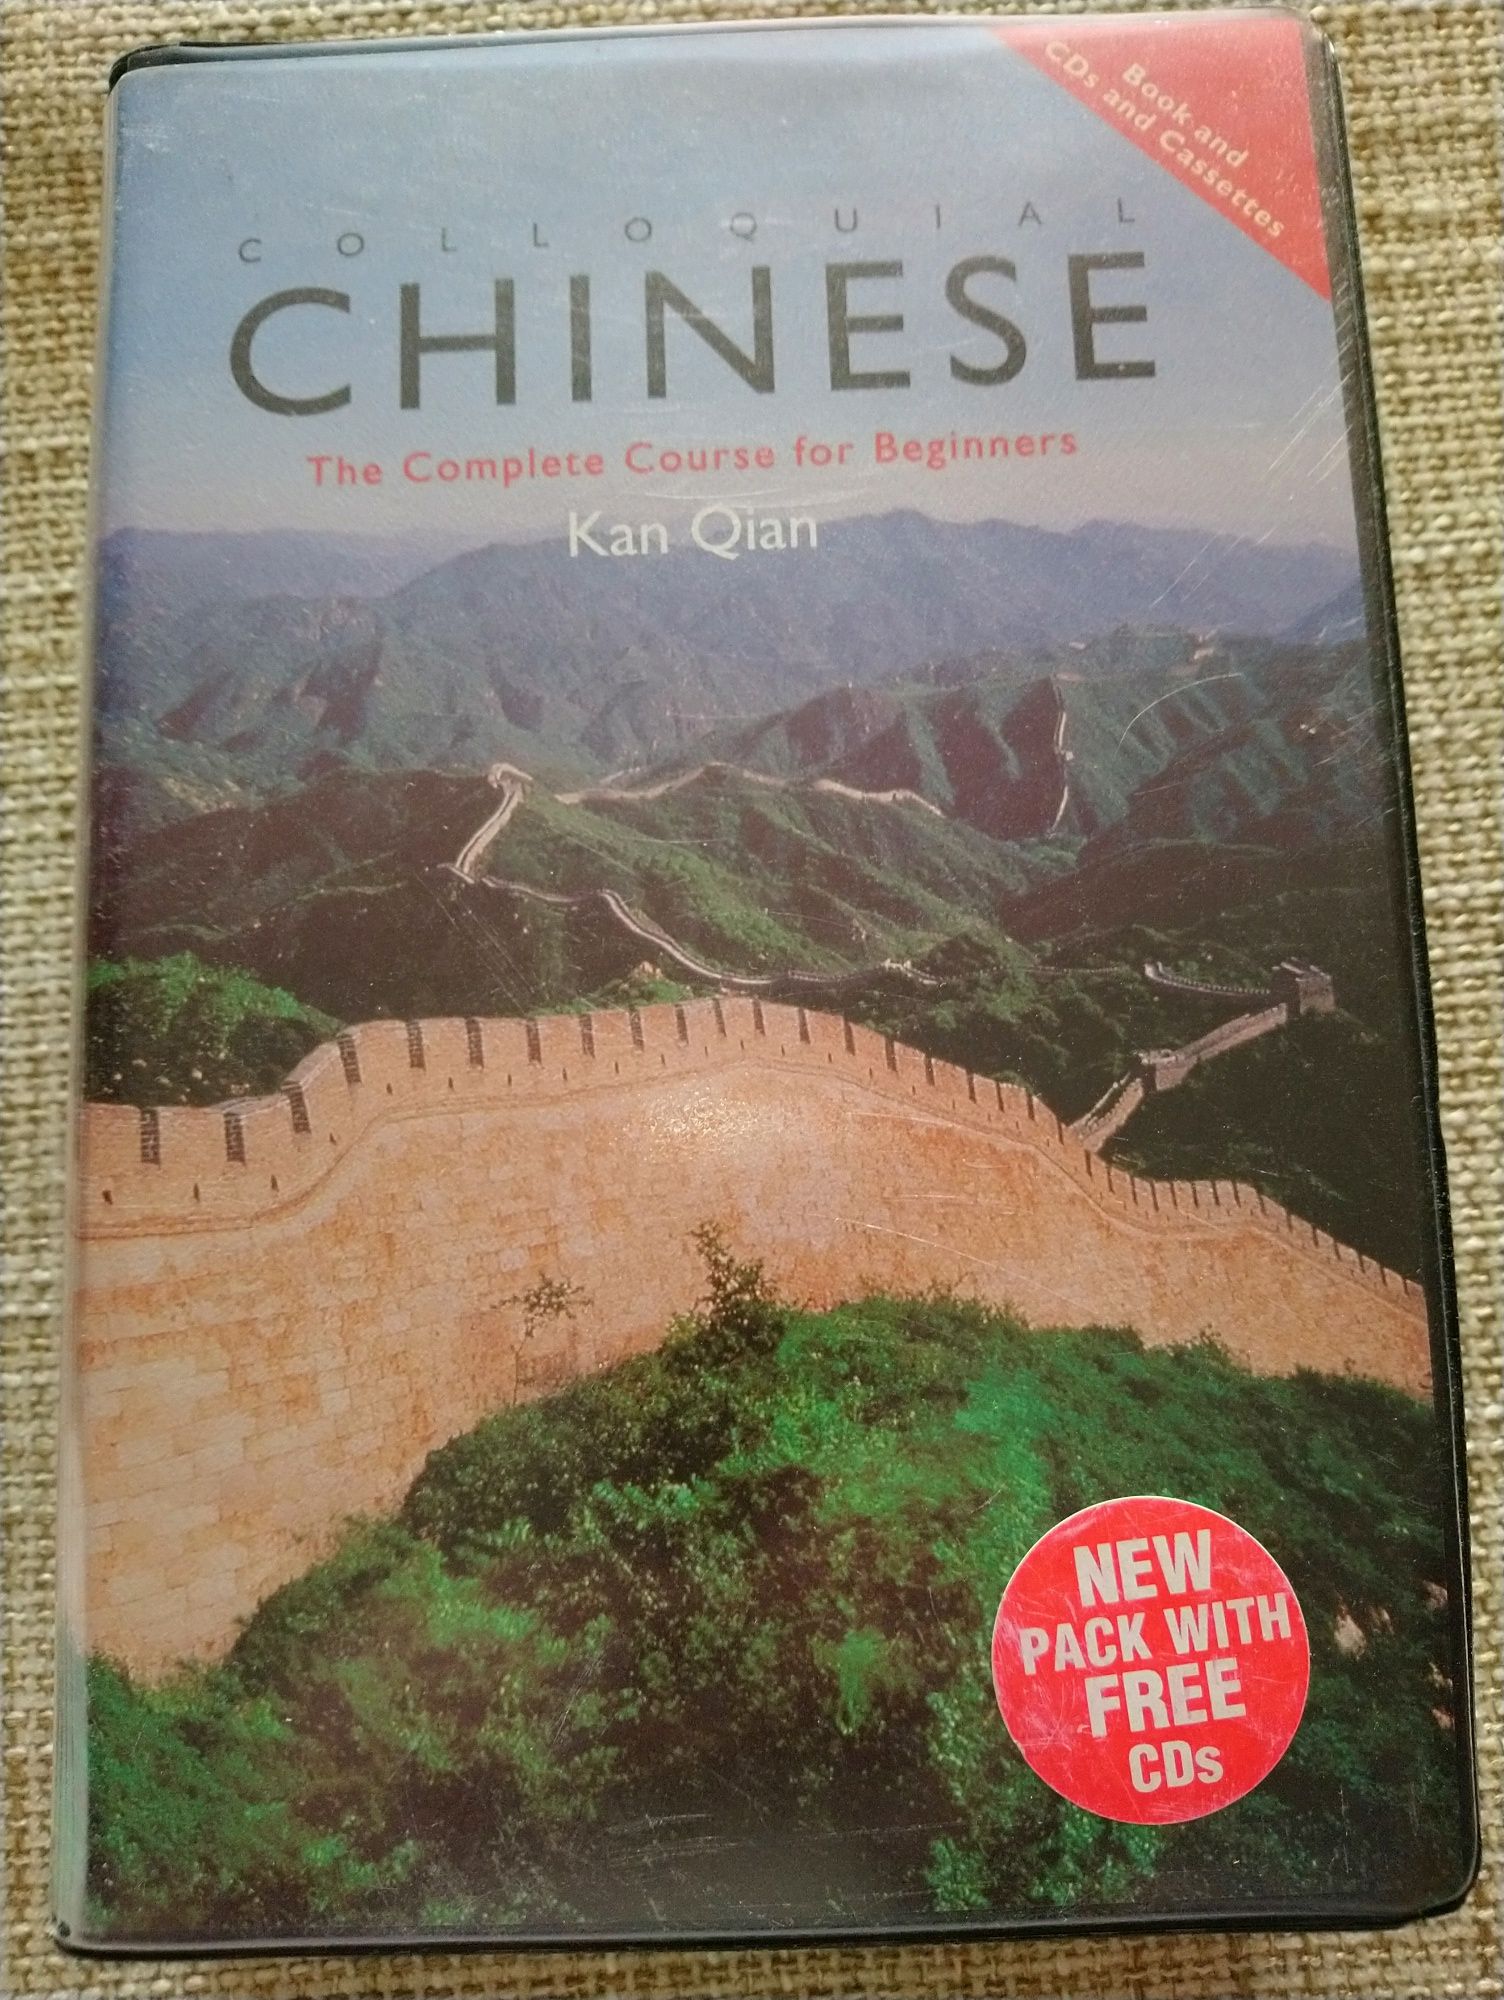 Двд диски і книга Colloquial Chinese на англійській мові